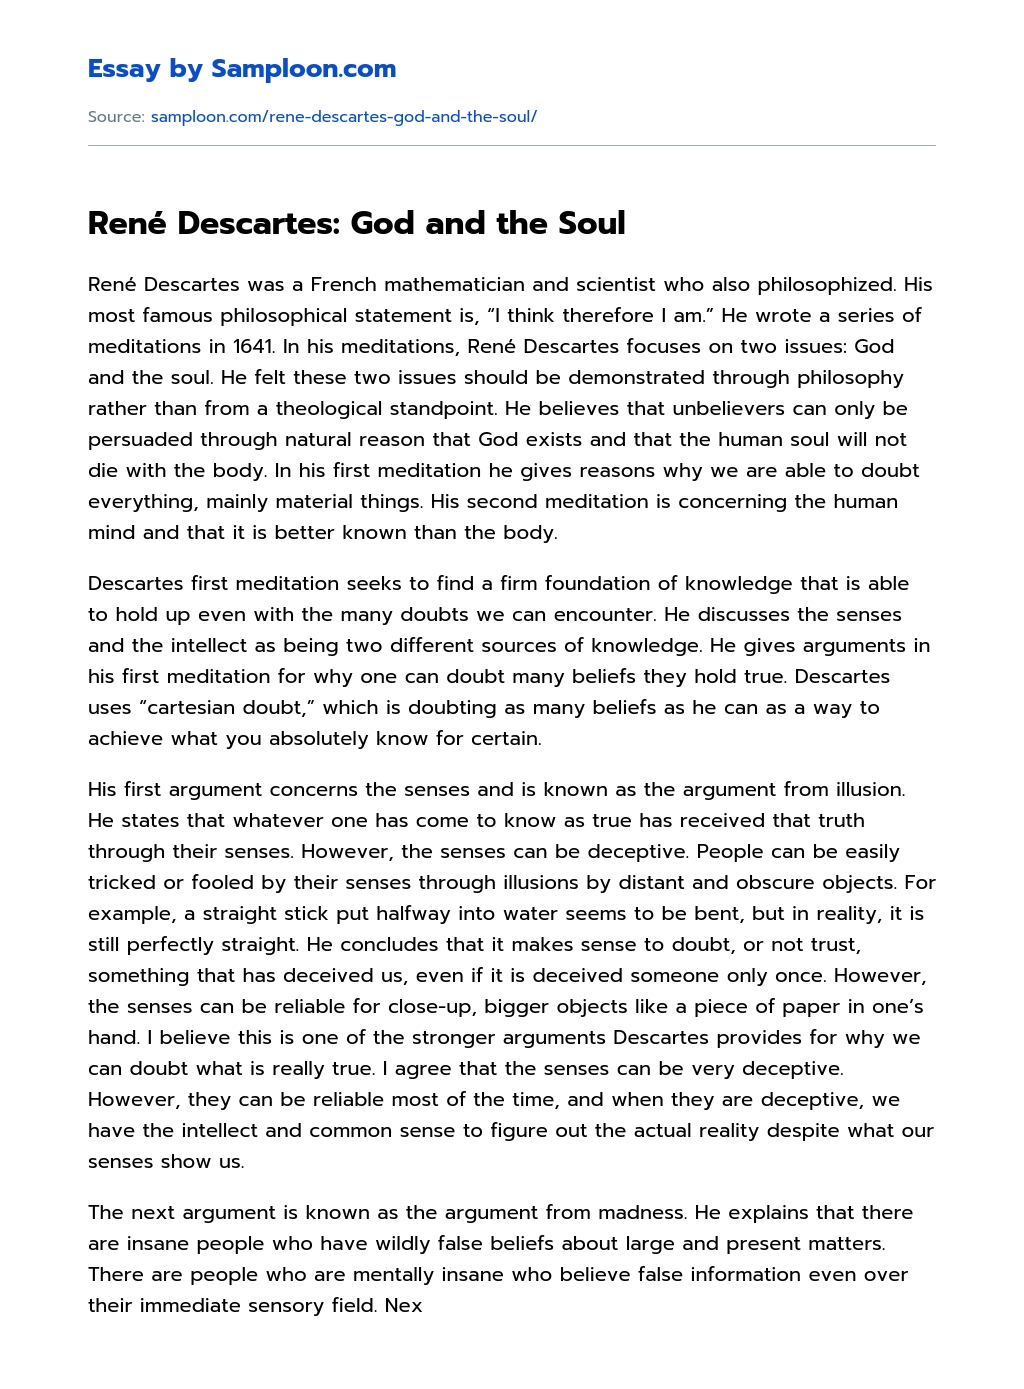 René Descartes: God and the Soul essay